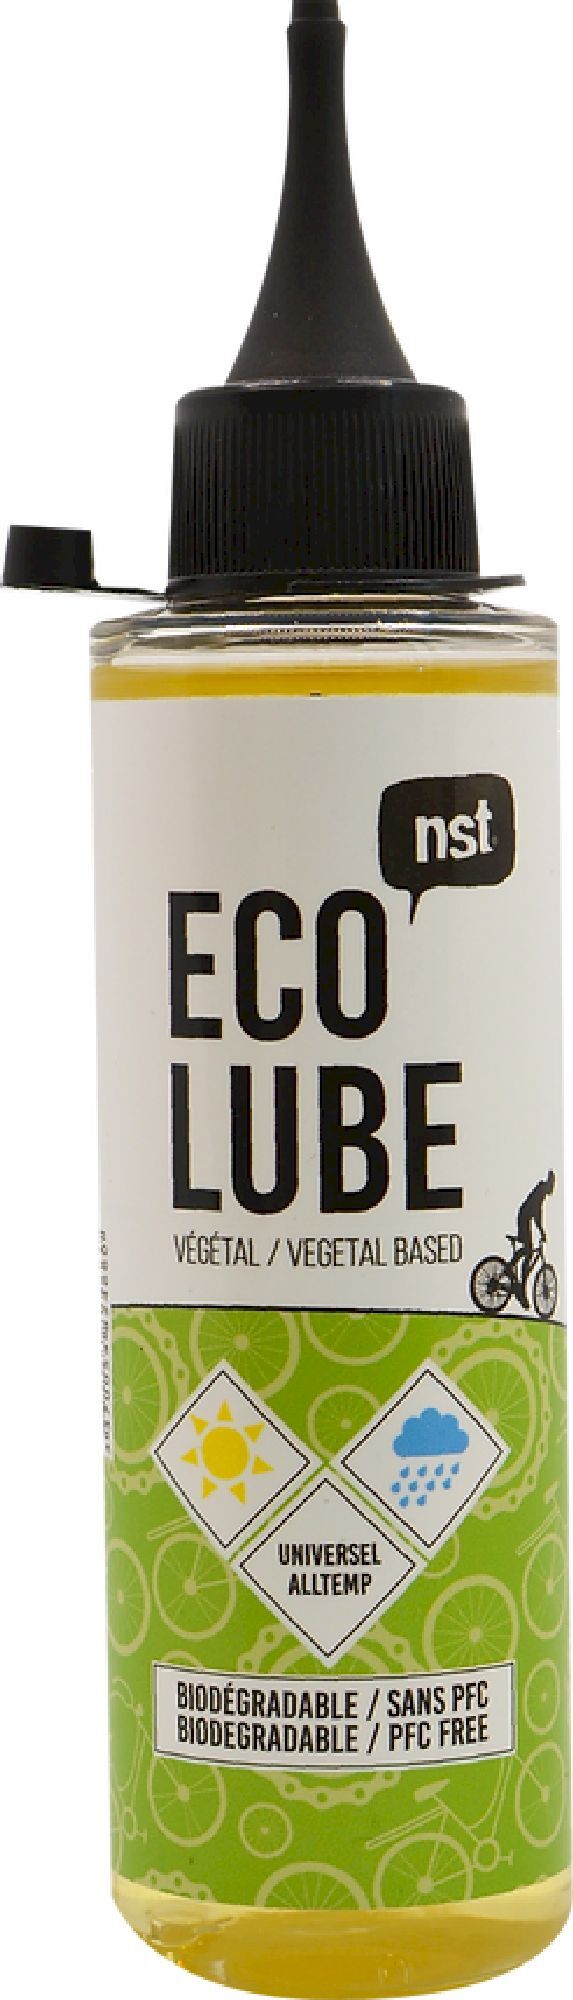 NST Lubrifiant Eco - Kedjeolja | Hardloop